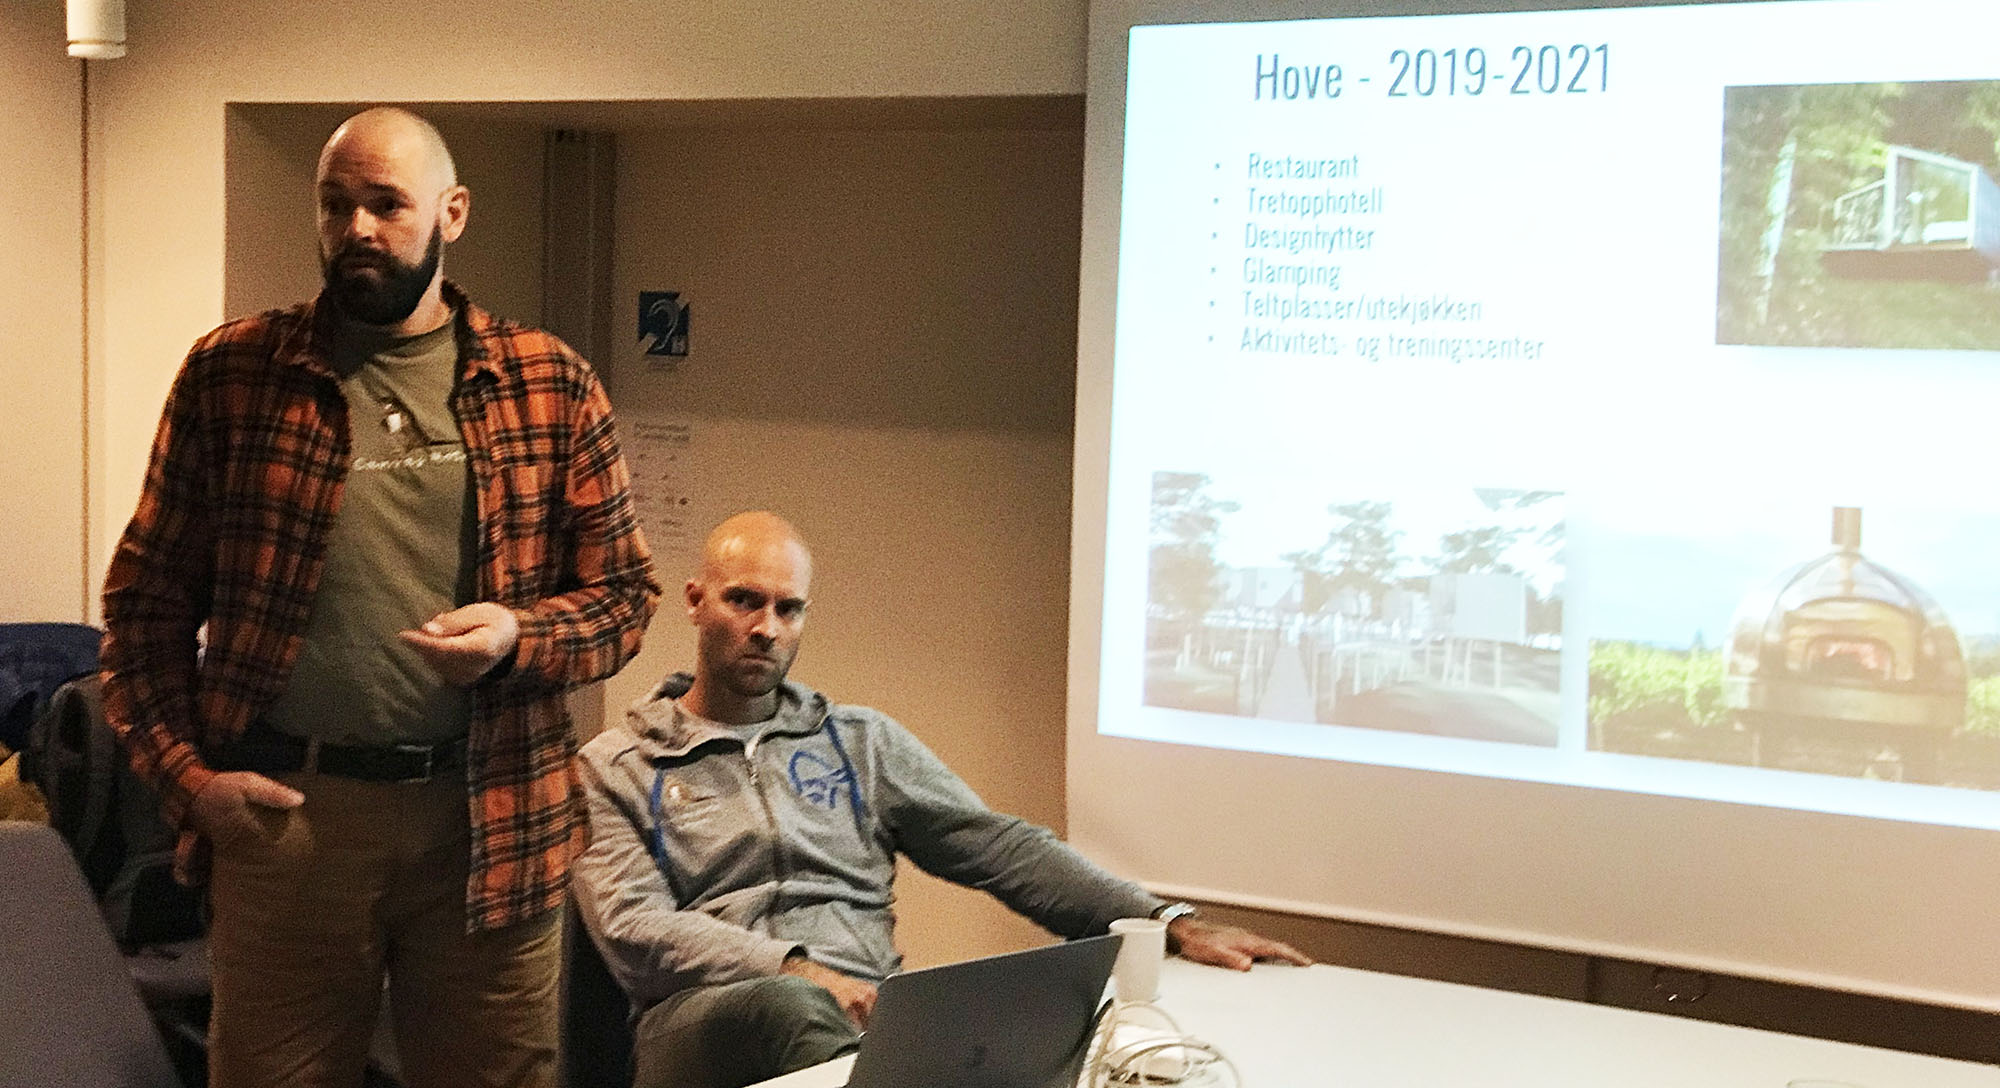 Jan Fasting og Vebjørn Haugerud presenterte planene for Hove Canvas. Foto: Øivind Berg